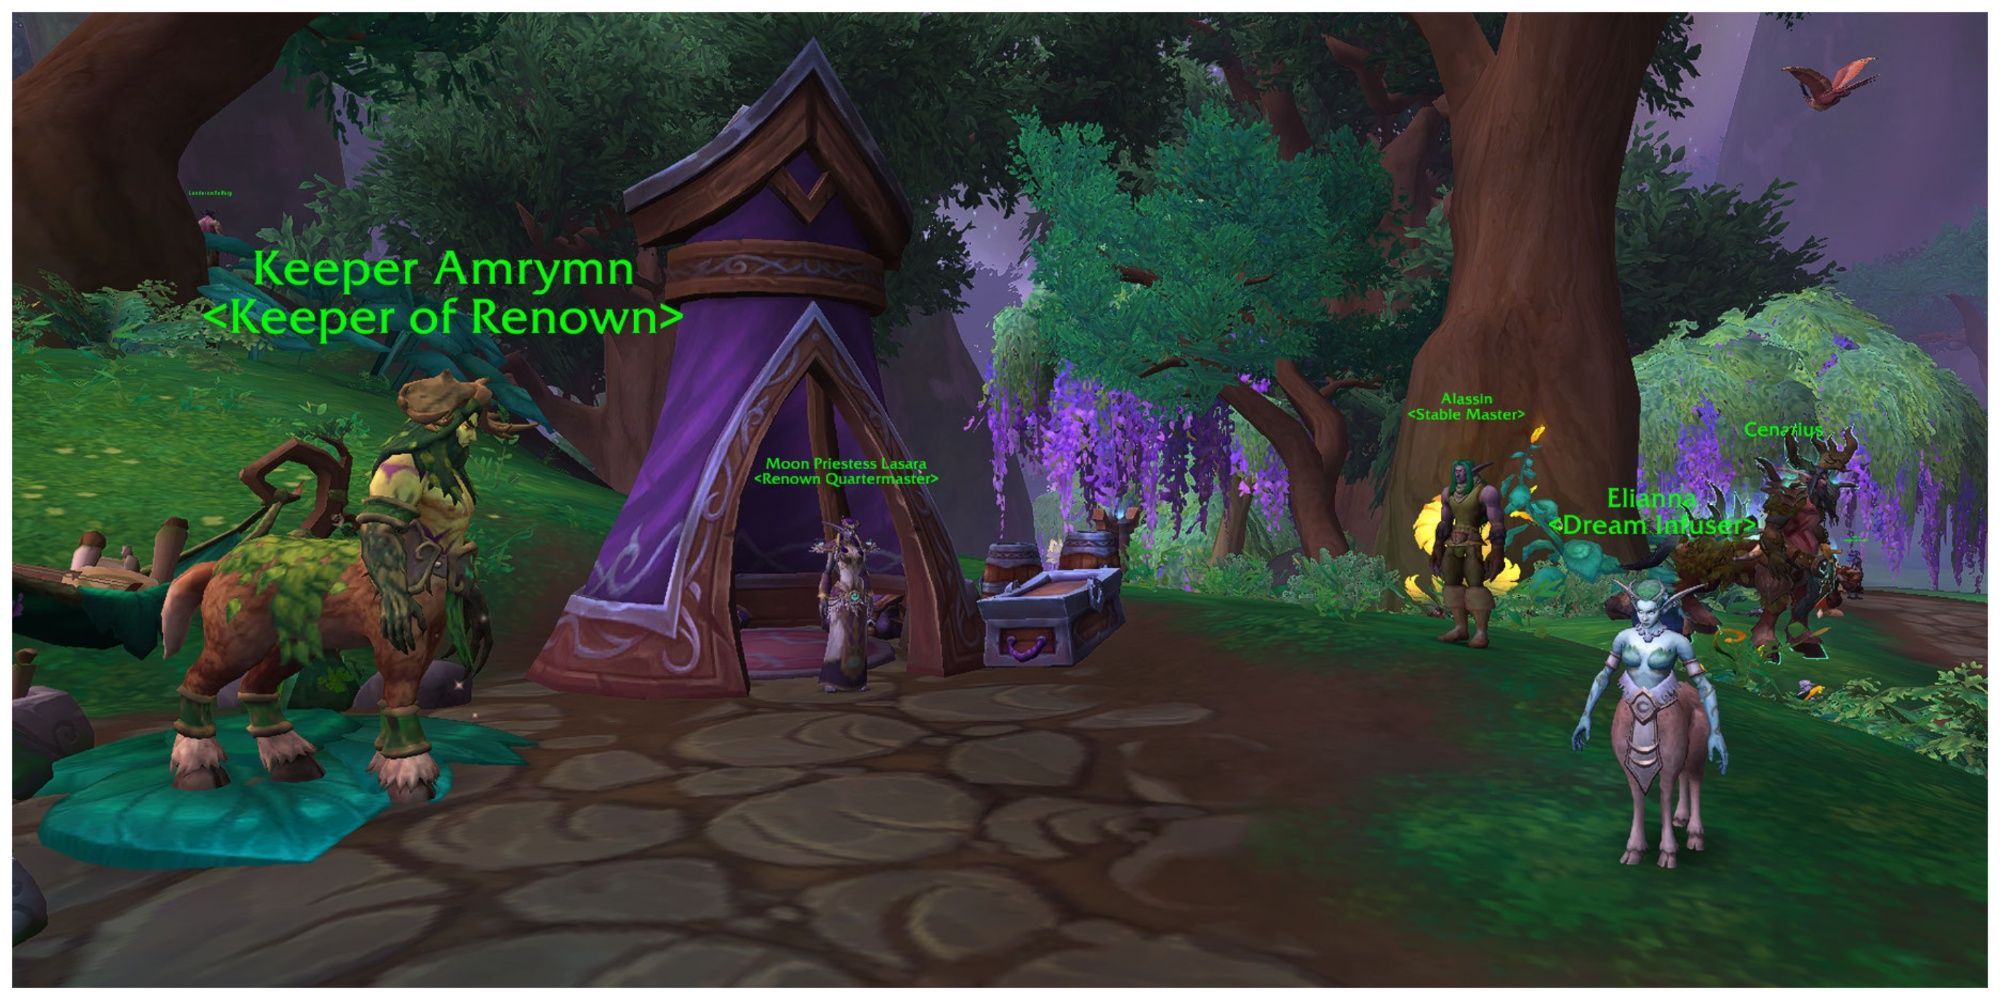 Druiden und Dryaden von World of Warcraft versammeln sich in der Nähe eines violetten Zeltes